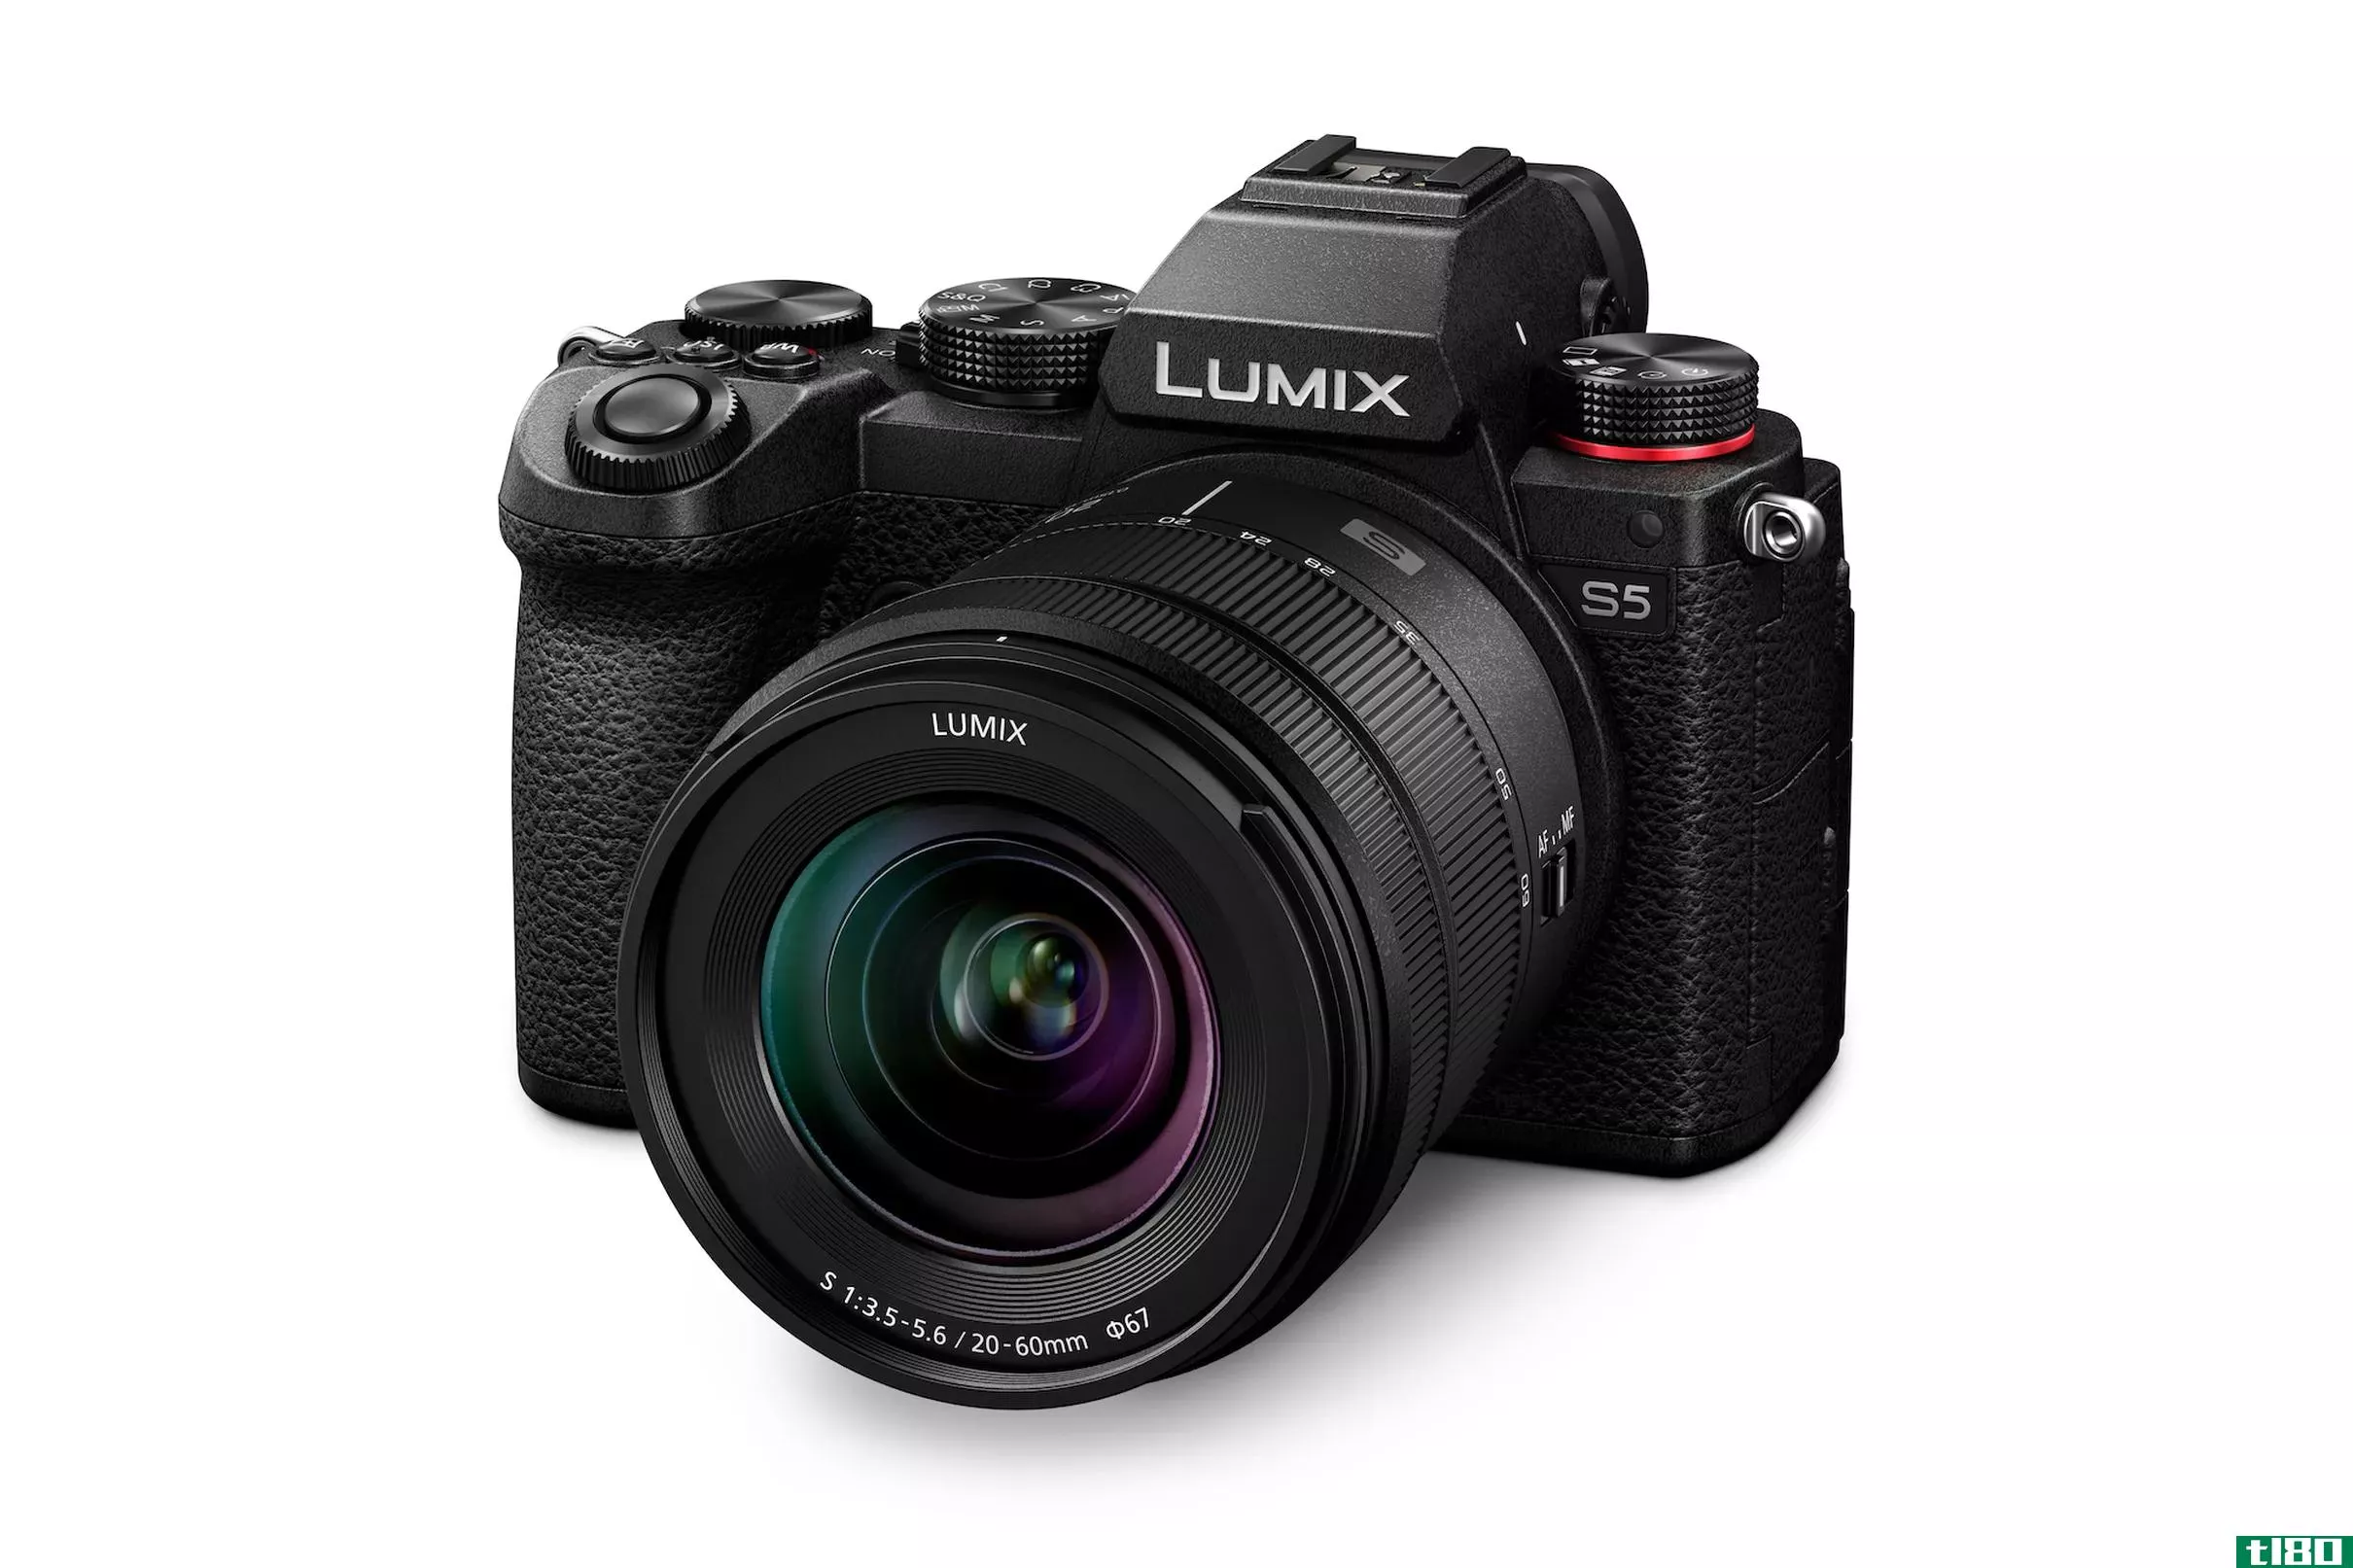 松下的LumixS5是一款更紧凑的全画幅无镜相机